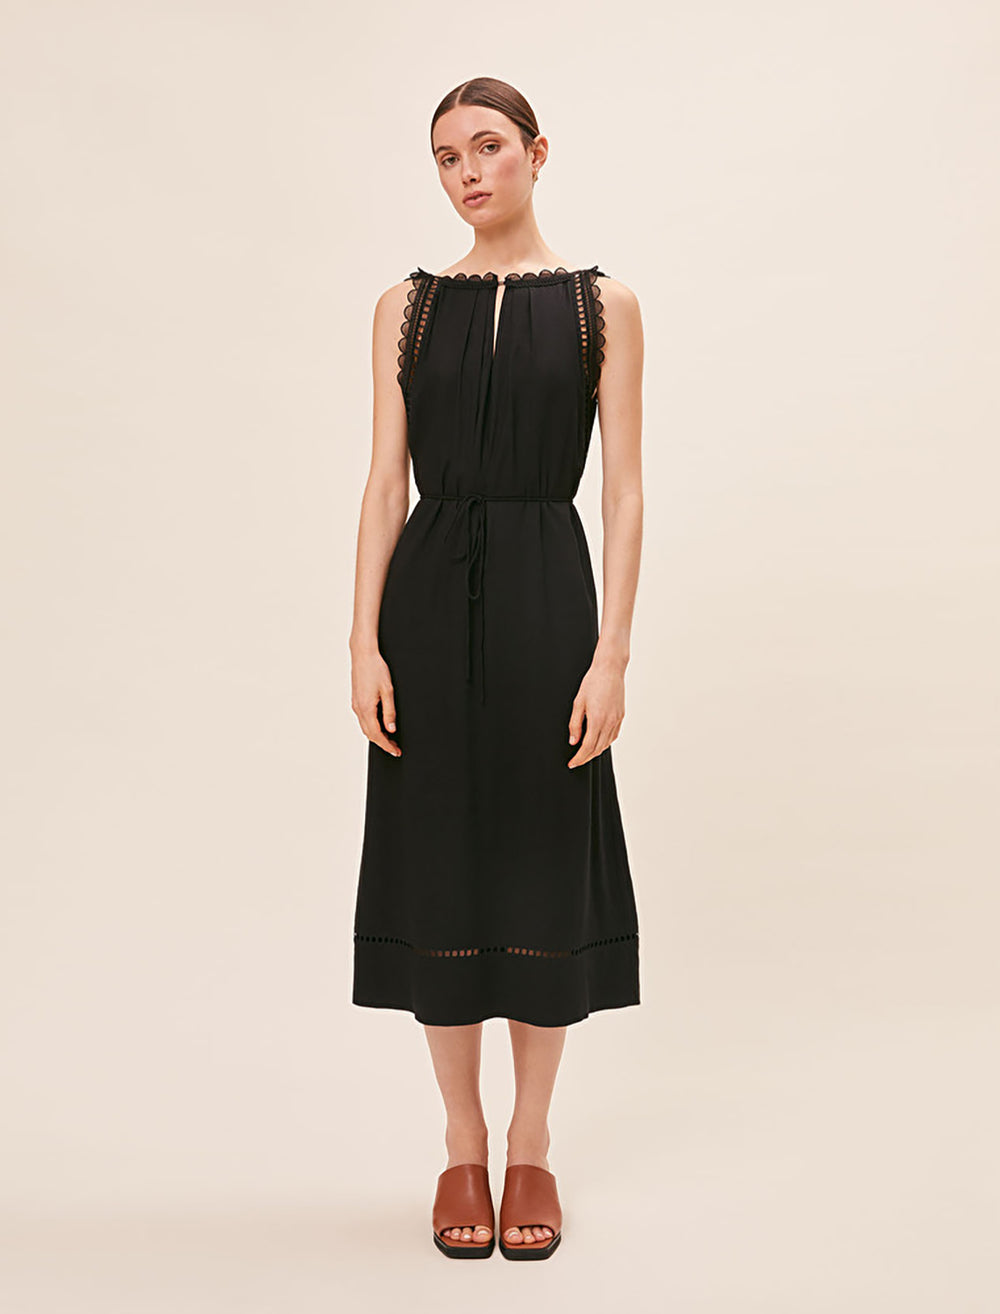 Model wearing Suncoo Paris' Cristy V-Neck Dress in Noir.